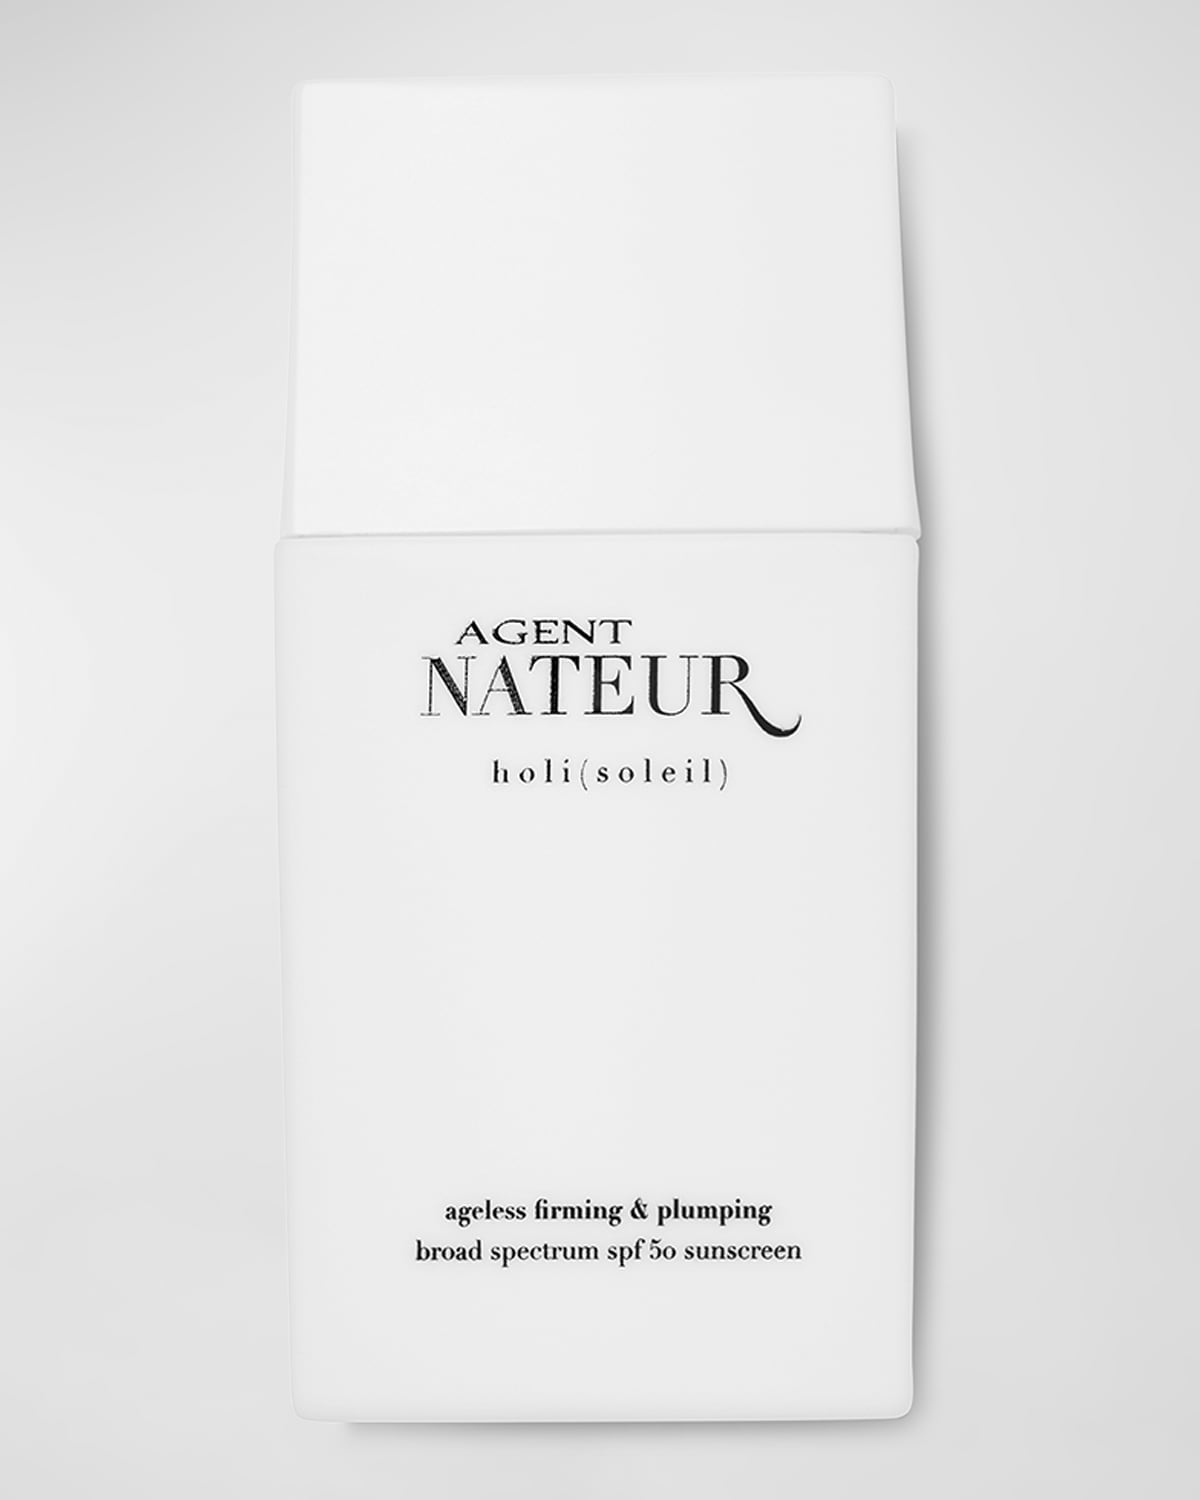 Shop Agent Nateur Holi (soleil) Ageless Firming & Plumping Sunscreen, Spf 50